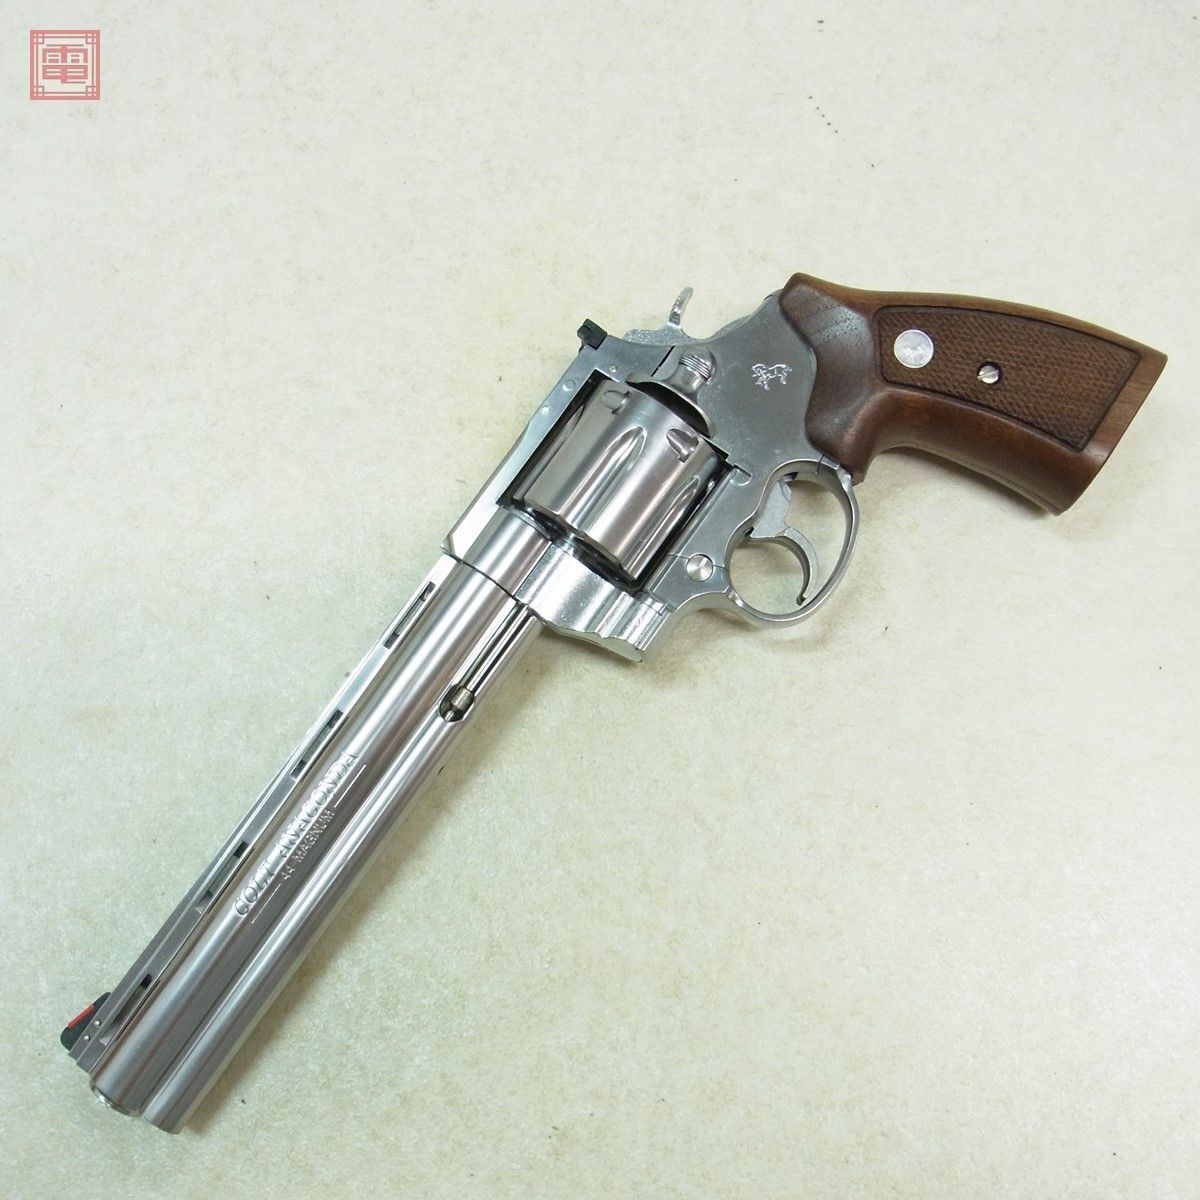  Marushin газ револьвер Colt дыра темно синий da8 дюймовый серебряный ABS X картридж specification 6mmBB из дерева рукоятка заменяемый текущее состояние товар [20